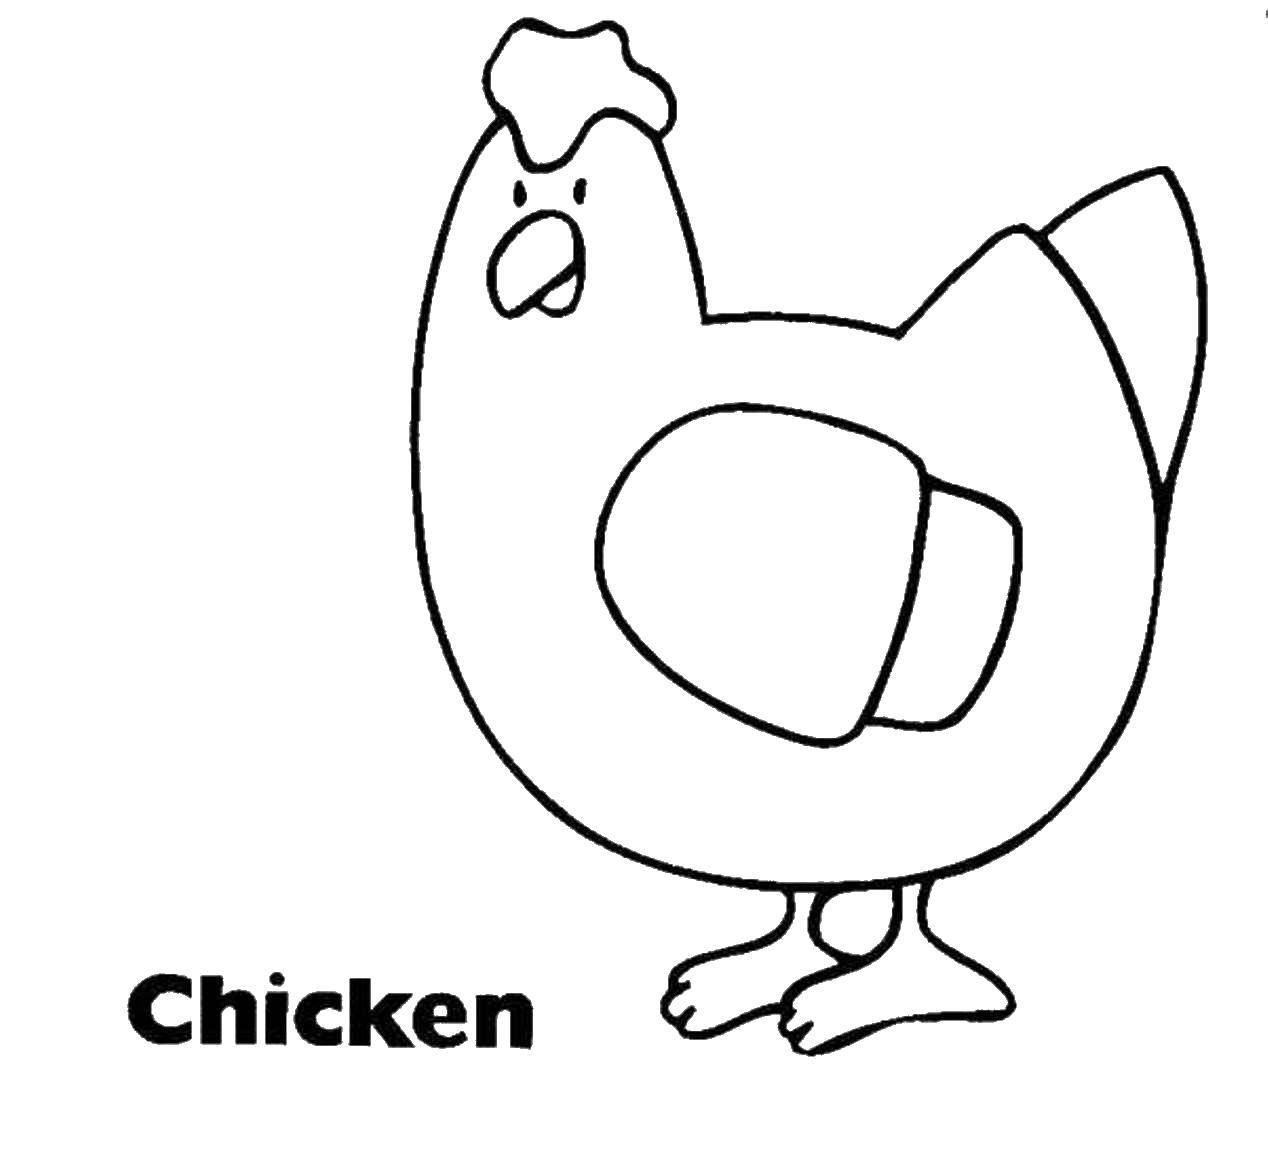 Название: Раскраска Курочка. Категория: простые раскраски. Теги: Птицы, курица.